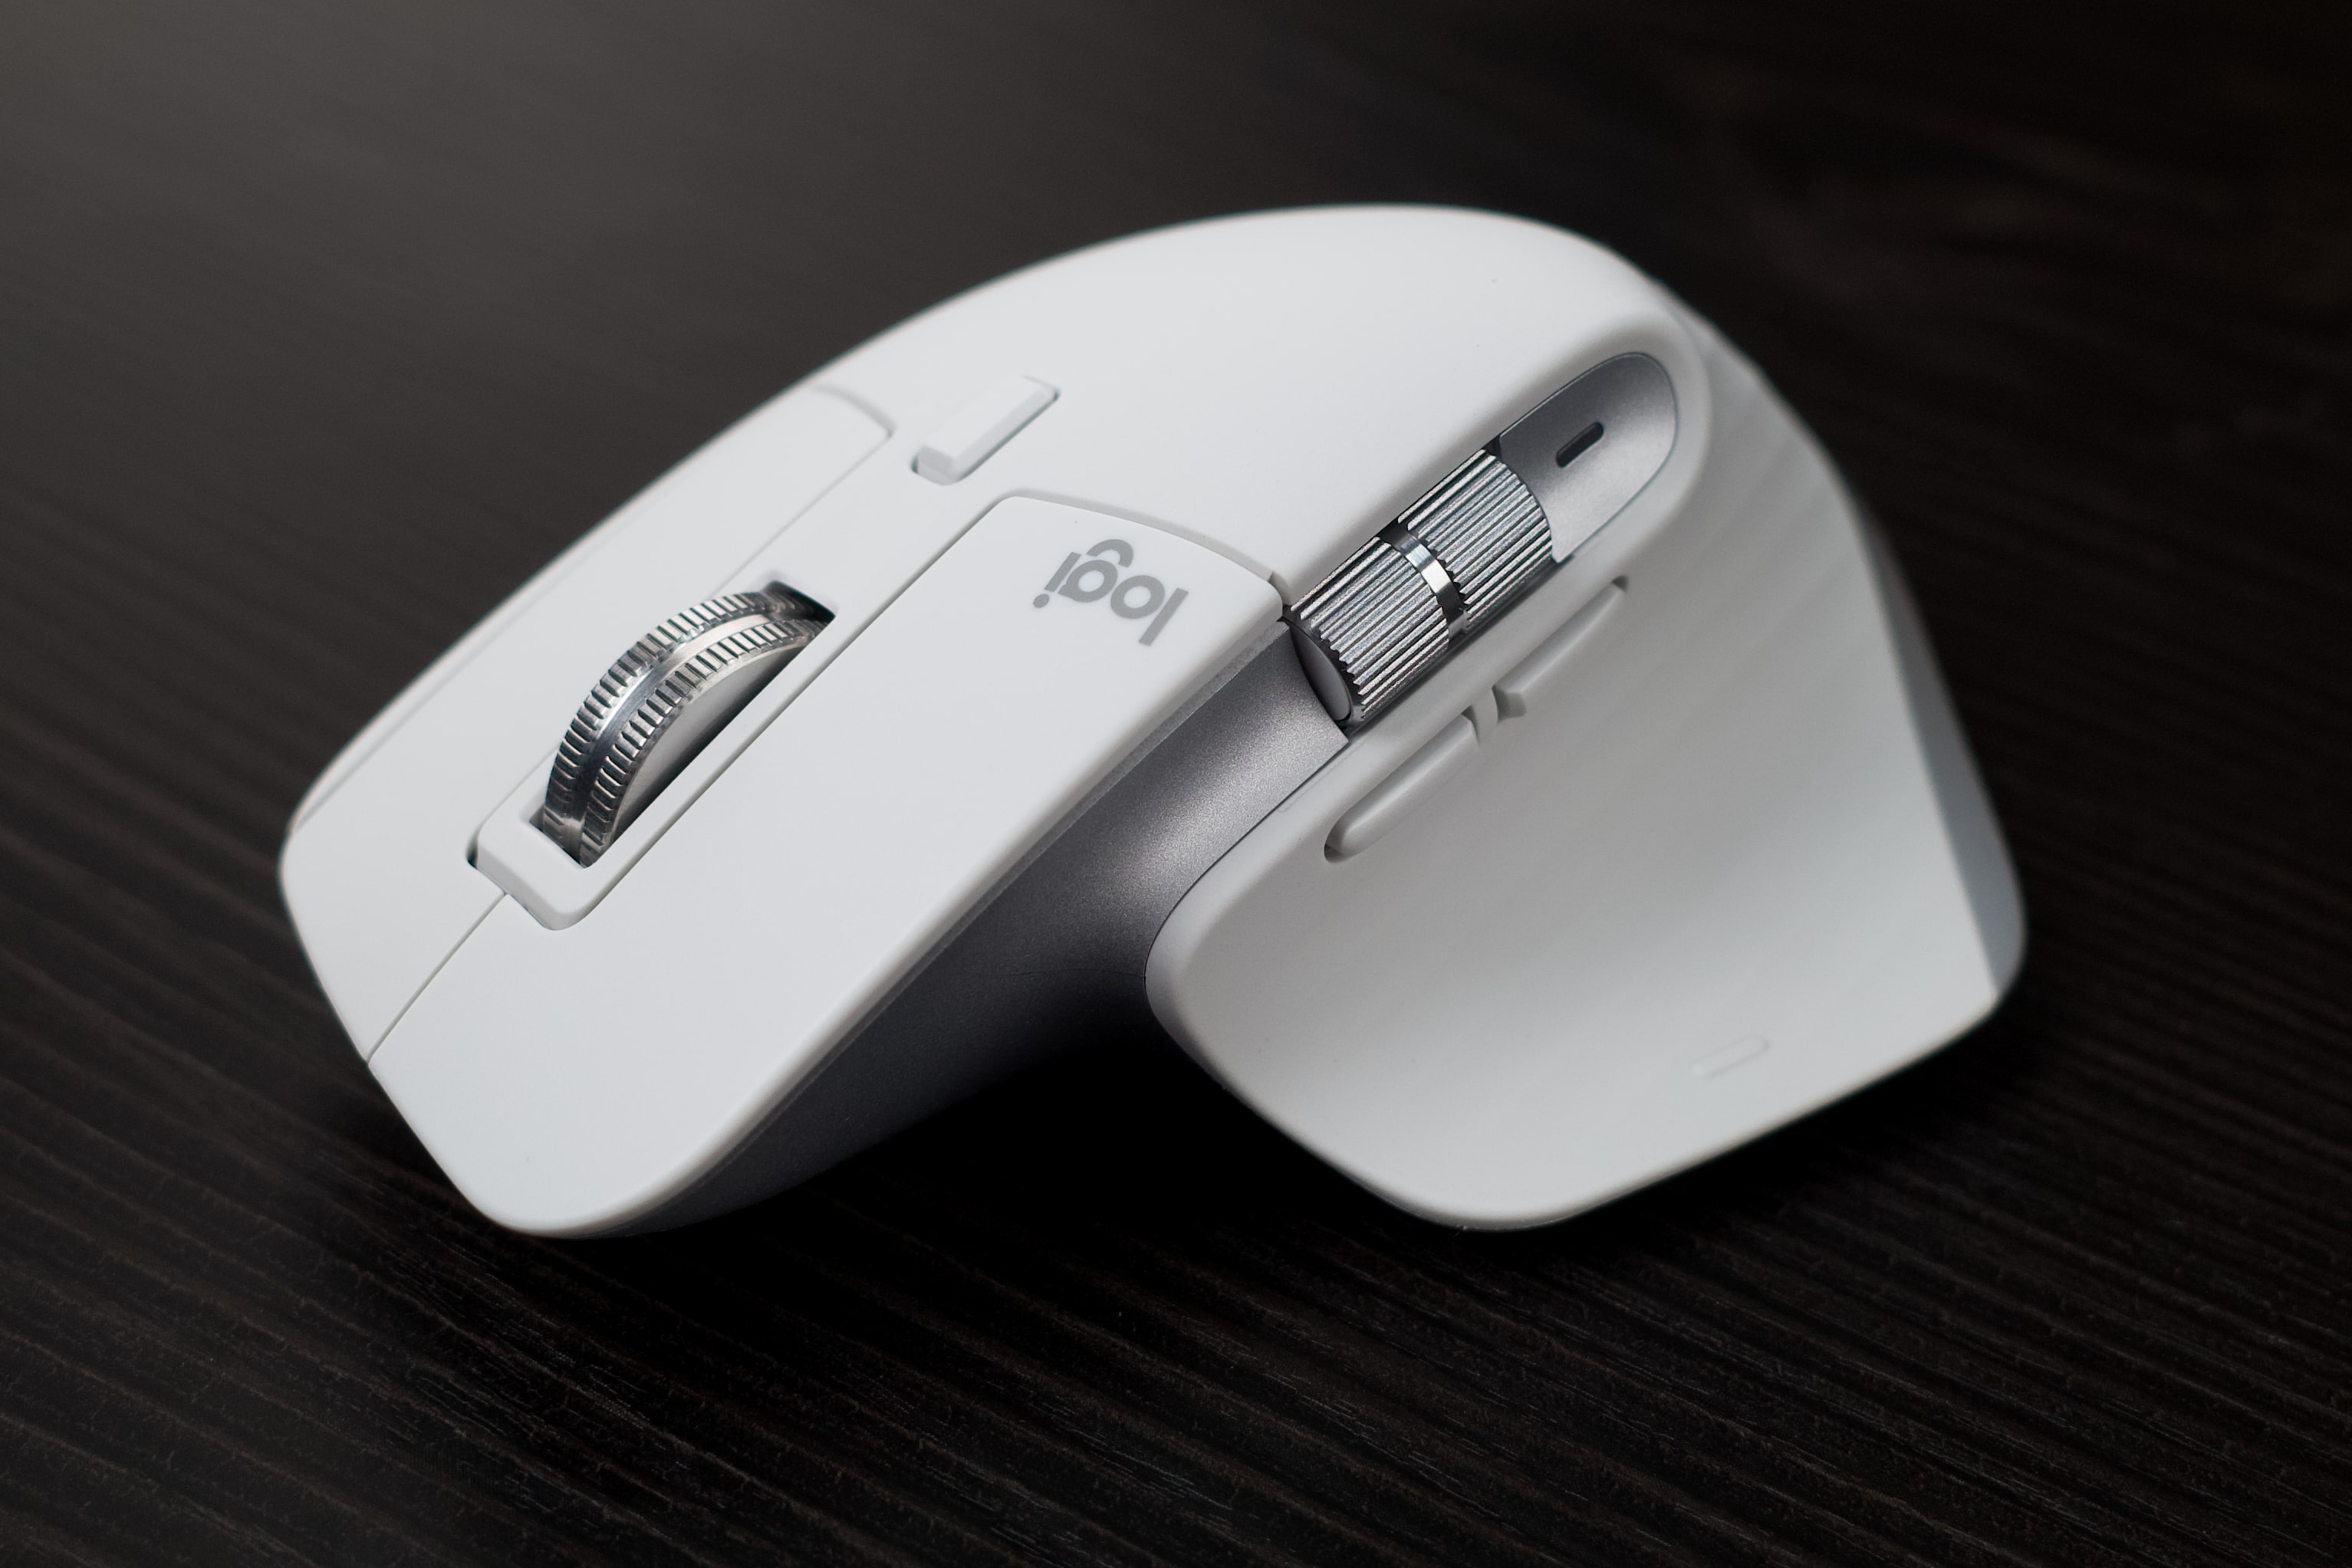 Trên tay Logitech MX Master 3S: Màu trắng trang nhã, nút bấm rất êm, độ nhạy cao hơn và chỉnh được